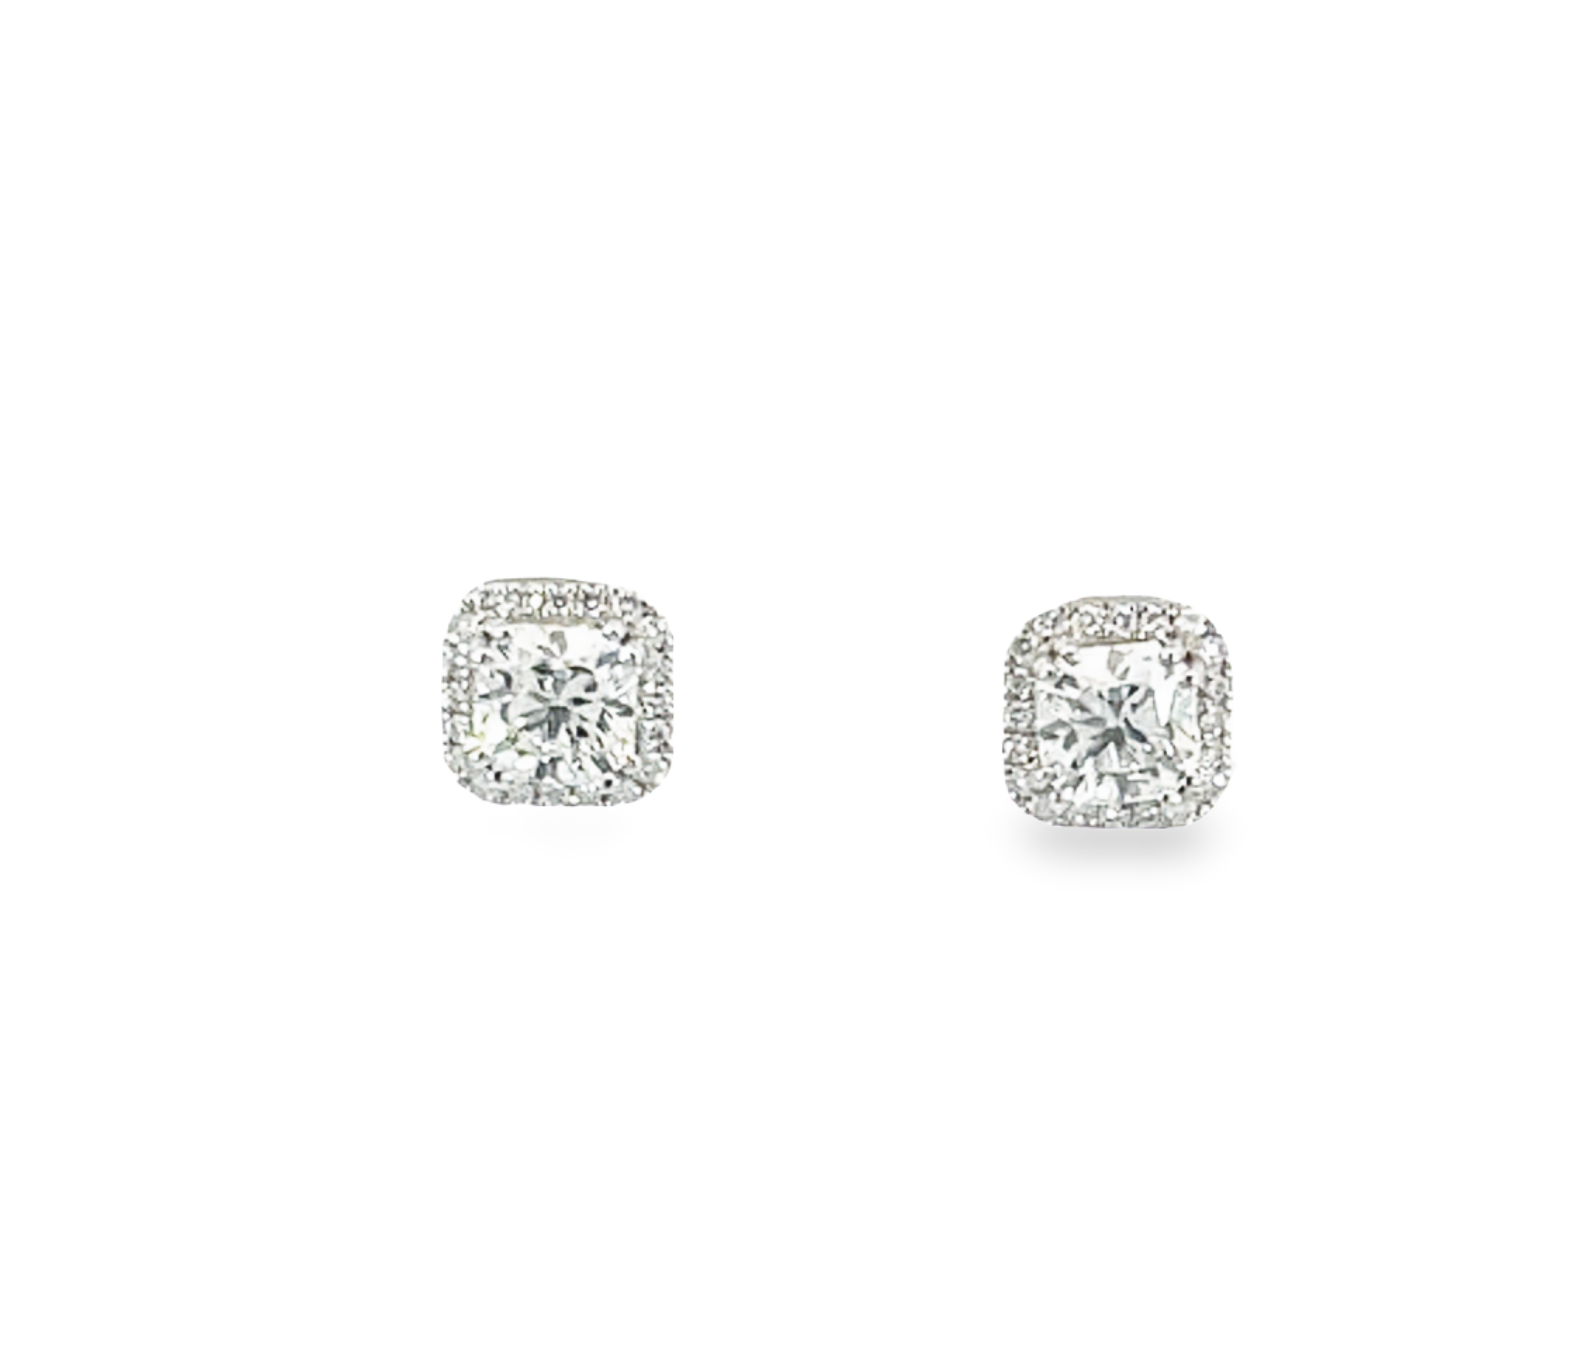 18K White Gold 1.16 CTW Diamond Earring